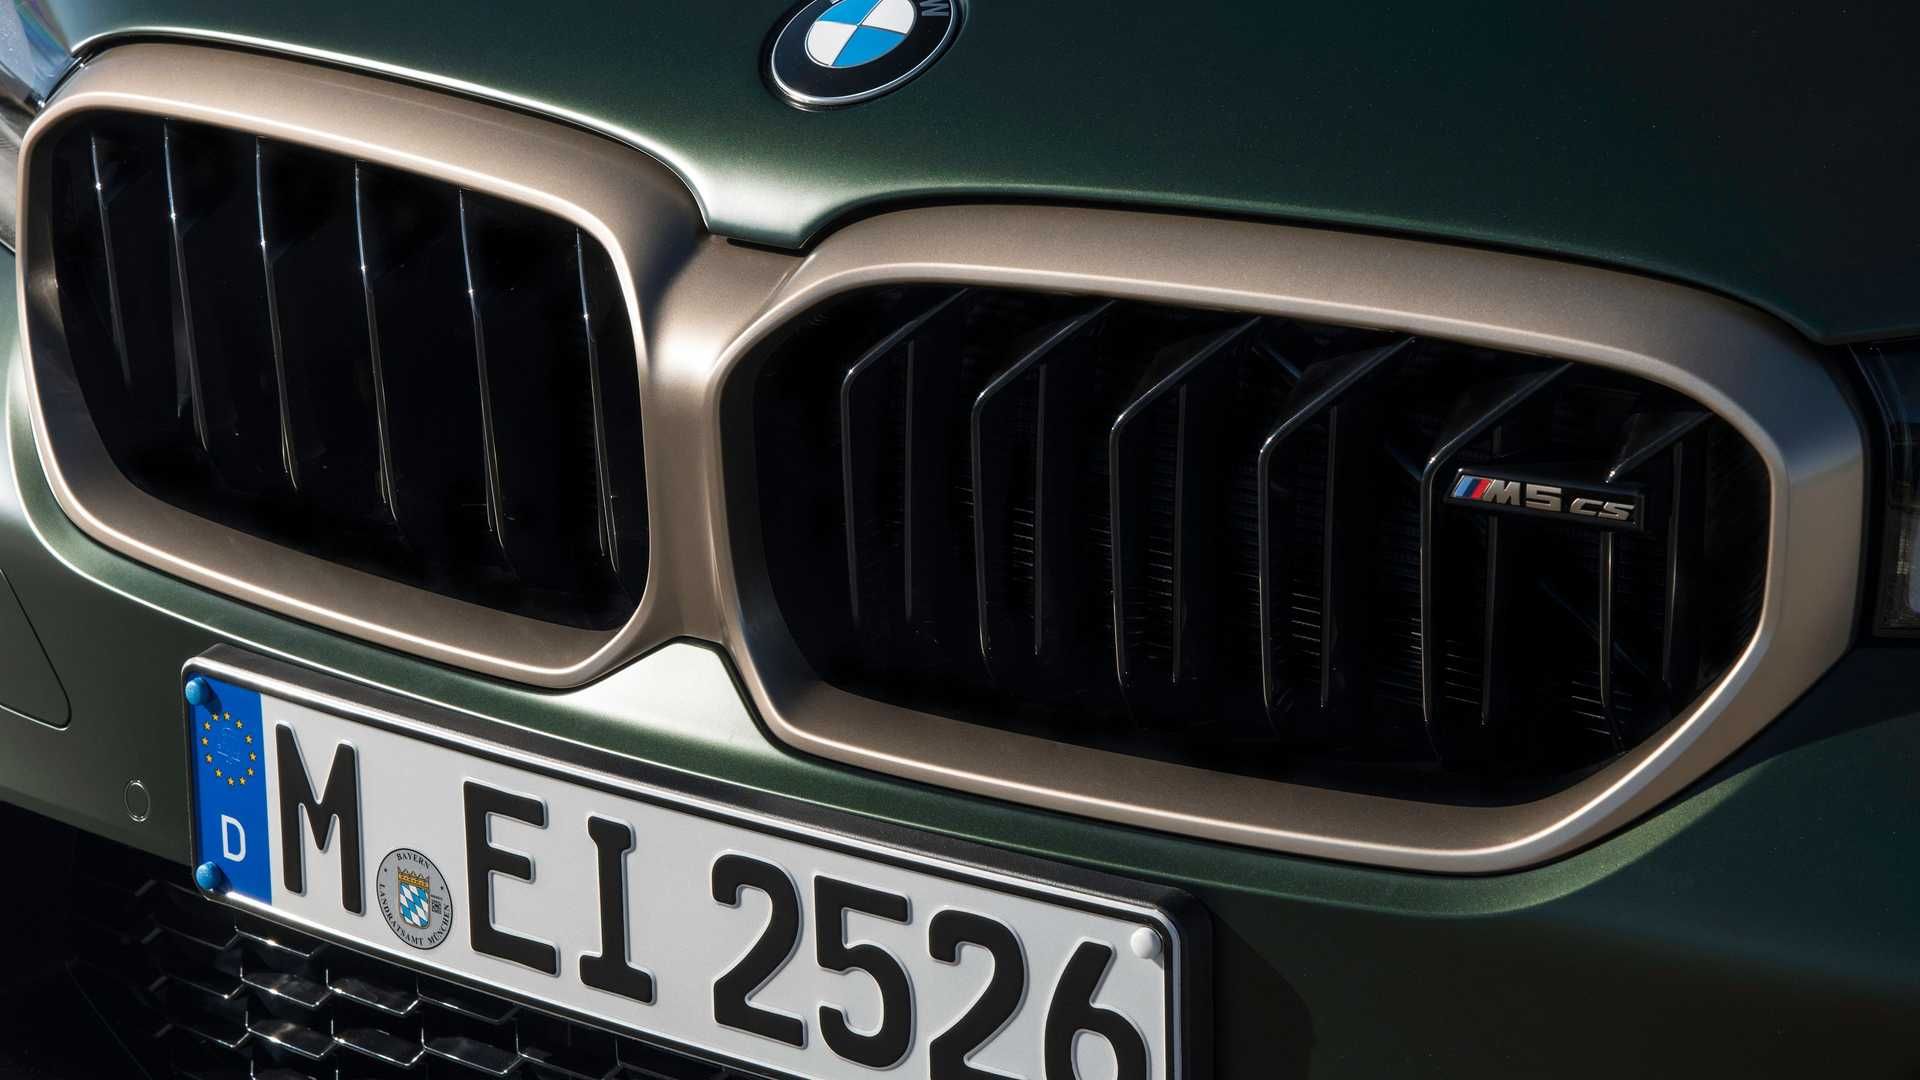 مرجع متخصصين ايران BMW M5 CS بي ام و ام 5 سي اس 2022 نماي جلوپنجره